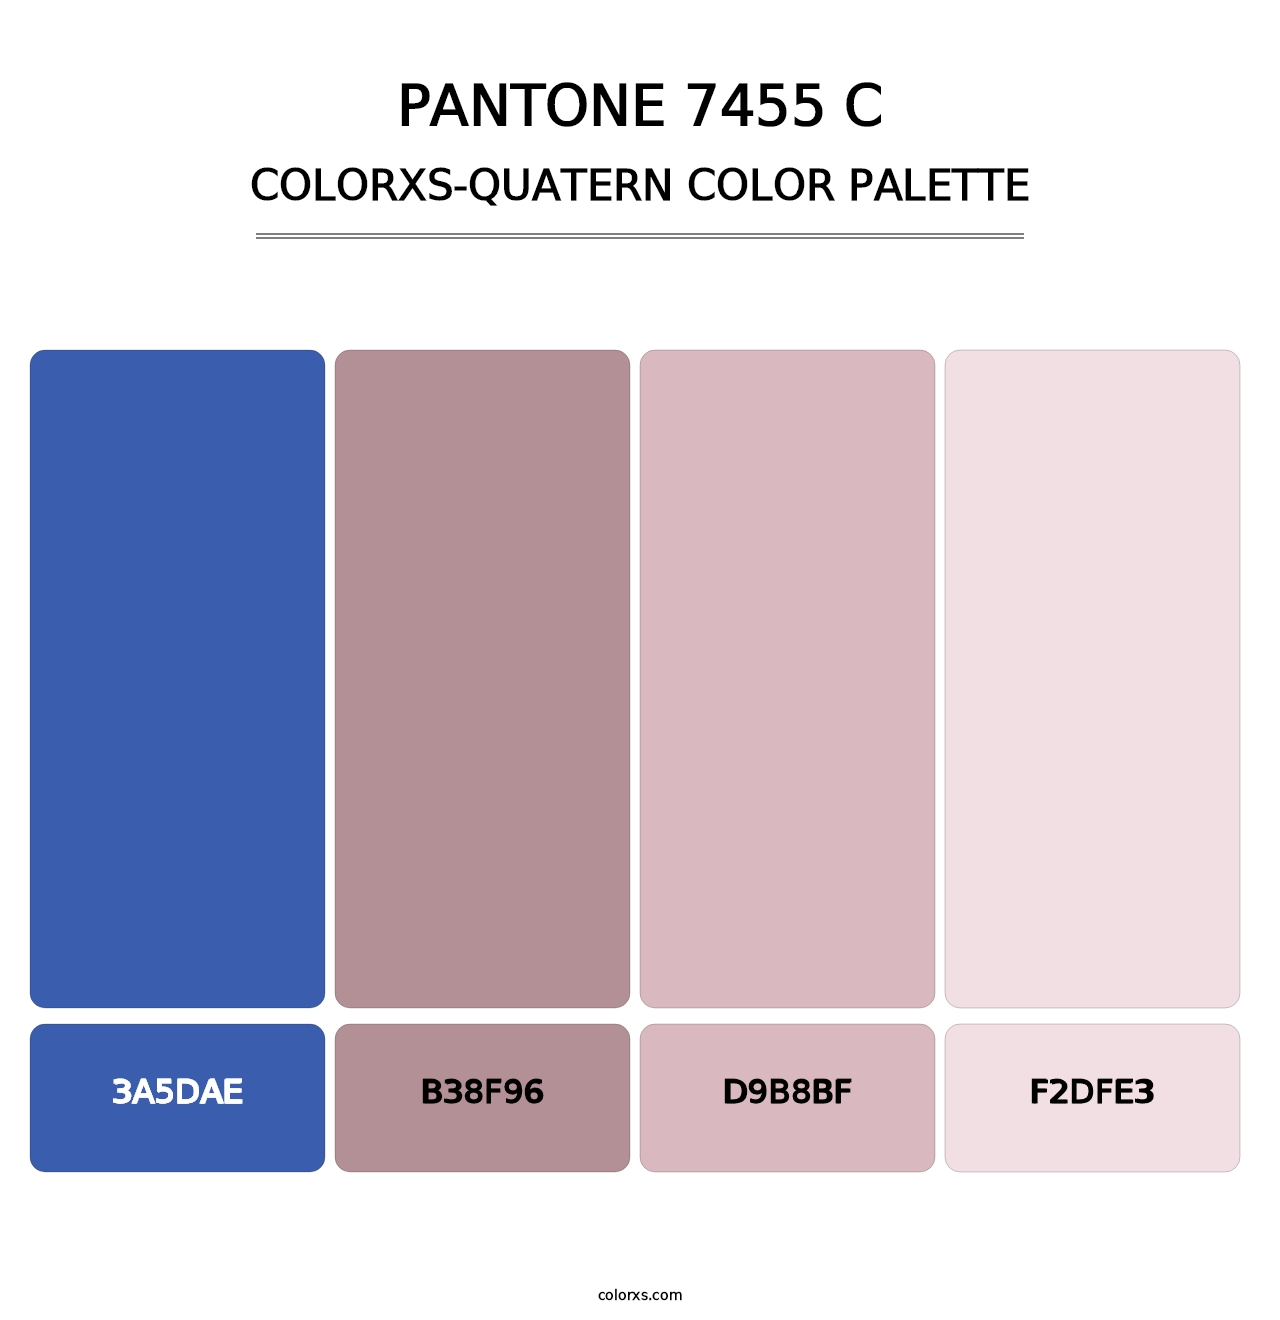 PANTONE 7455 C - Colorxs Quatern Palette